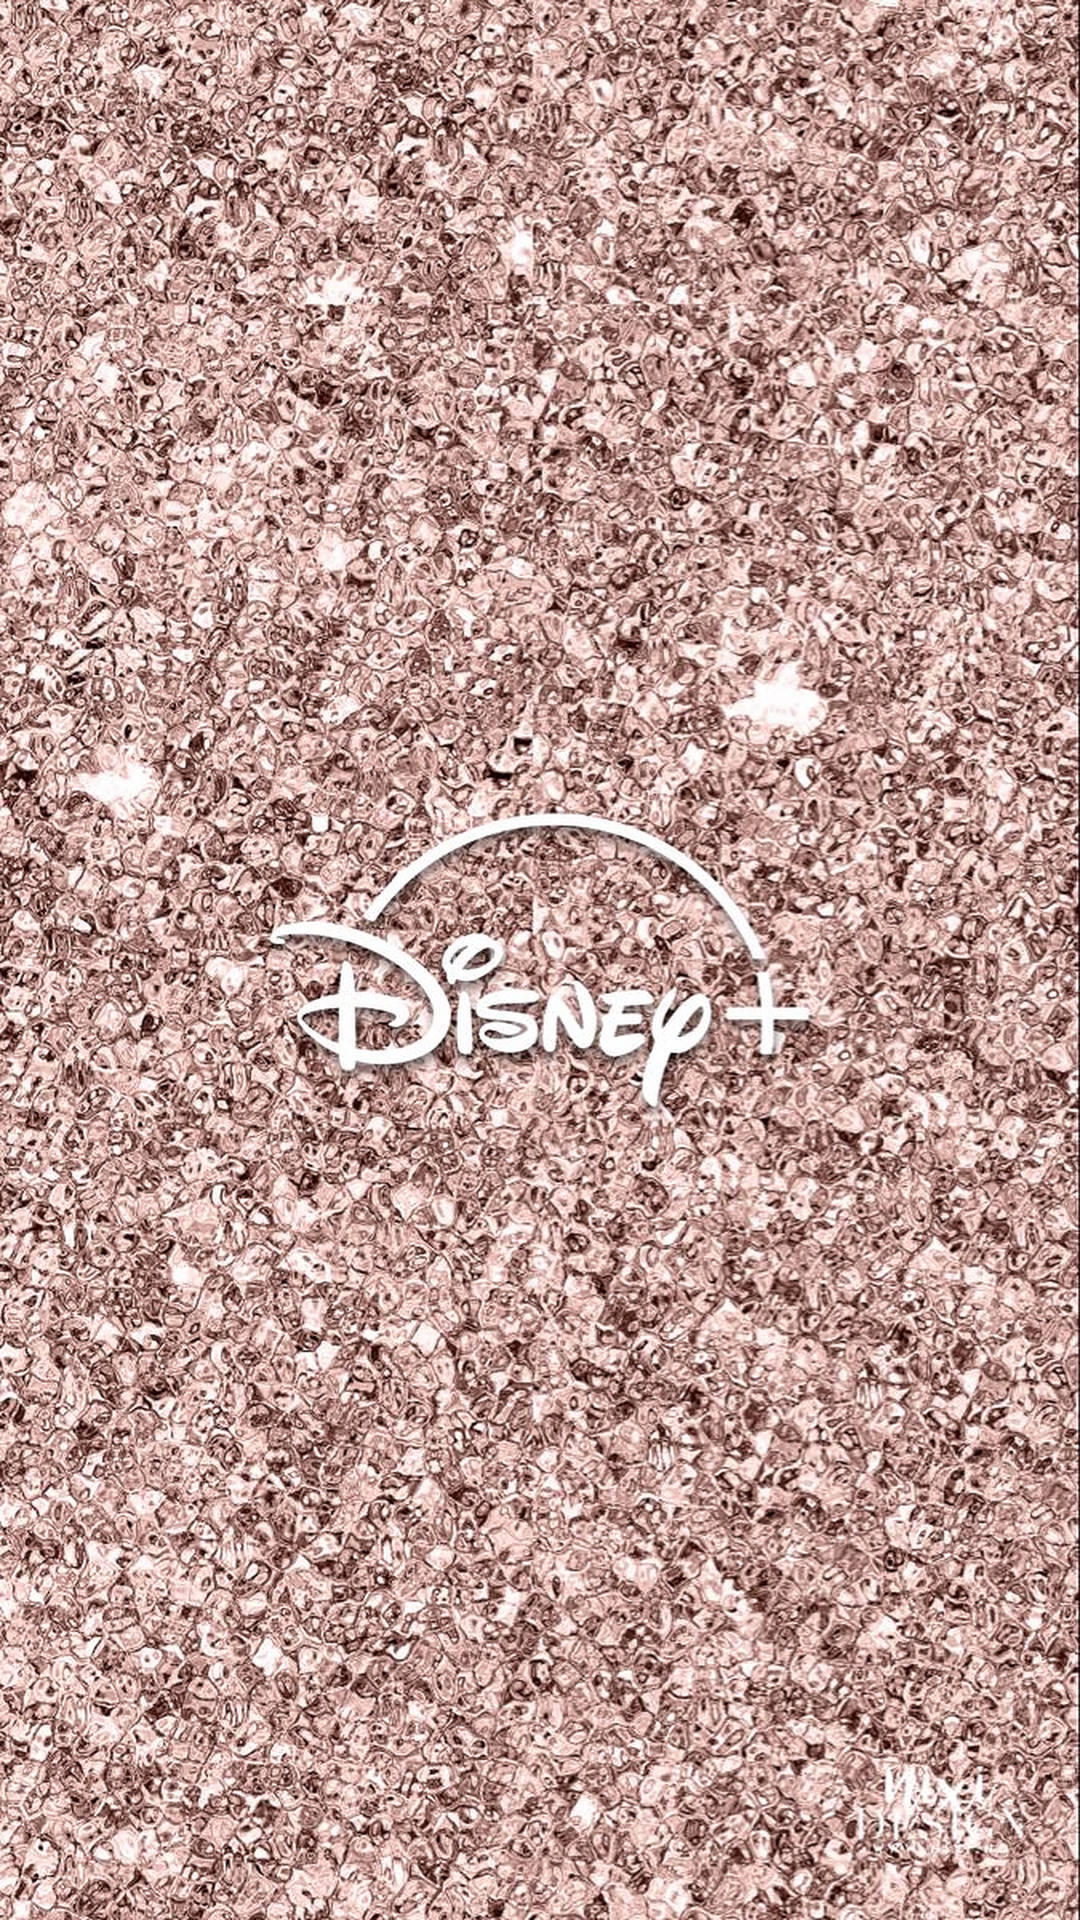 Disney Logo Glitters Wallpaper